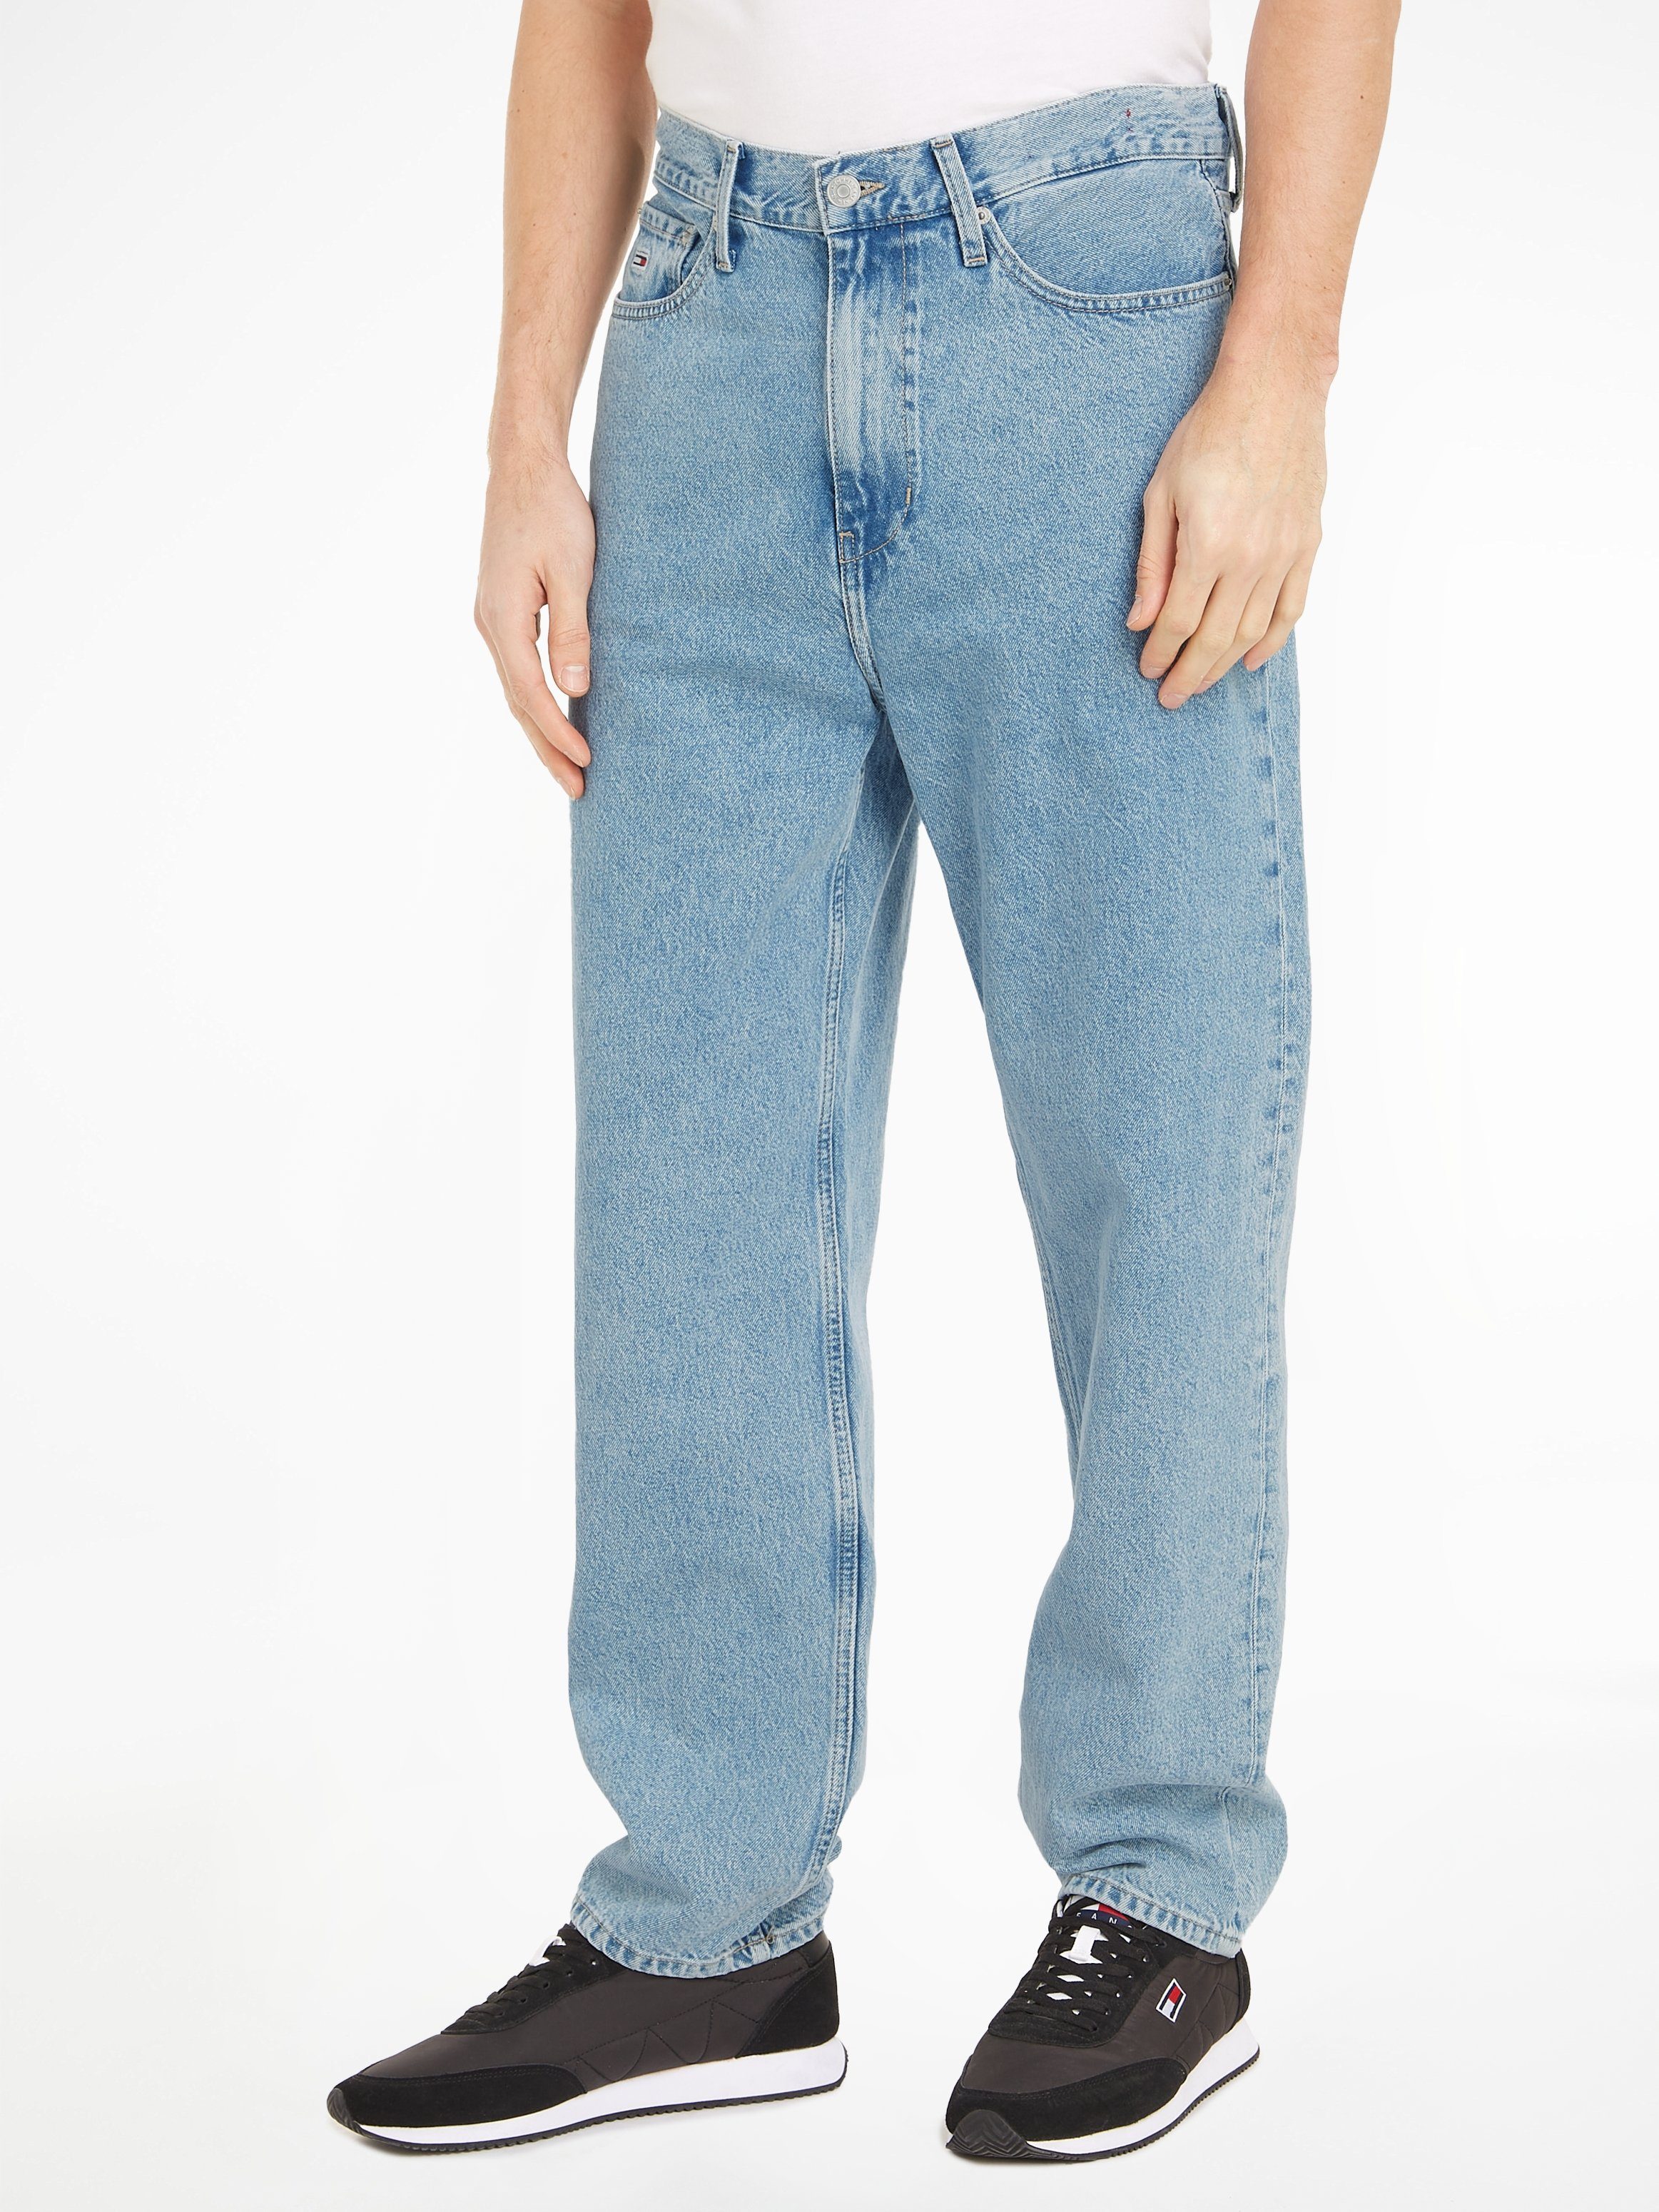 JEAN Tommy CG4014 5-Pocket-Jeans Jeans SKATER